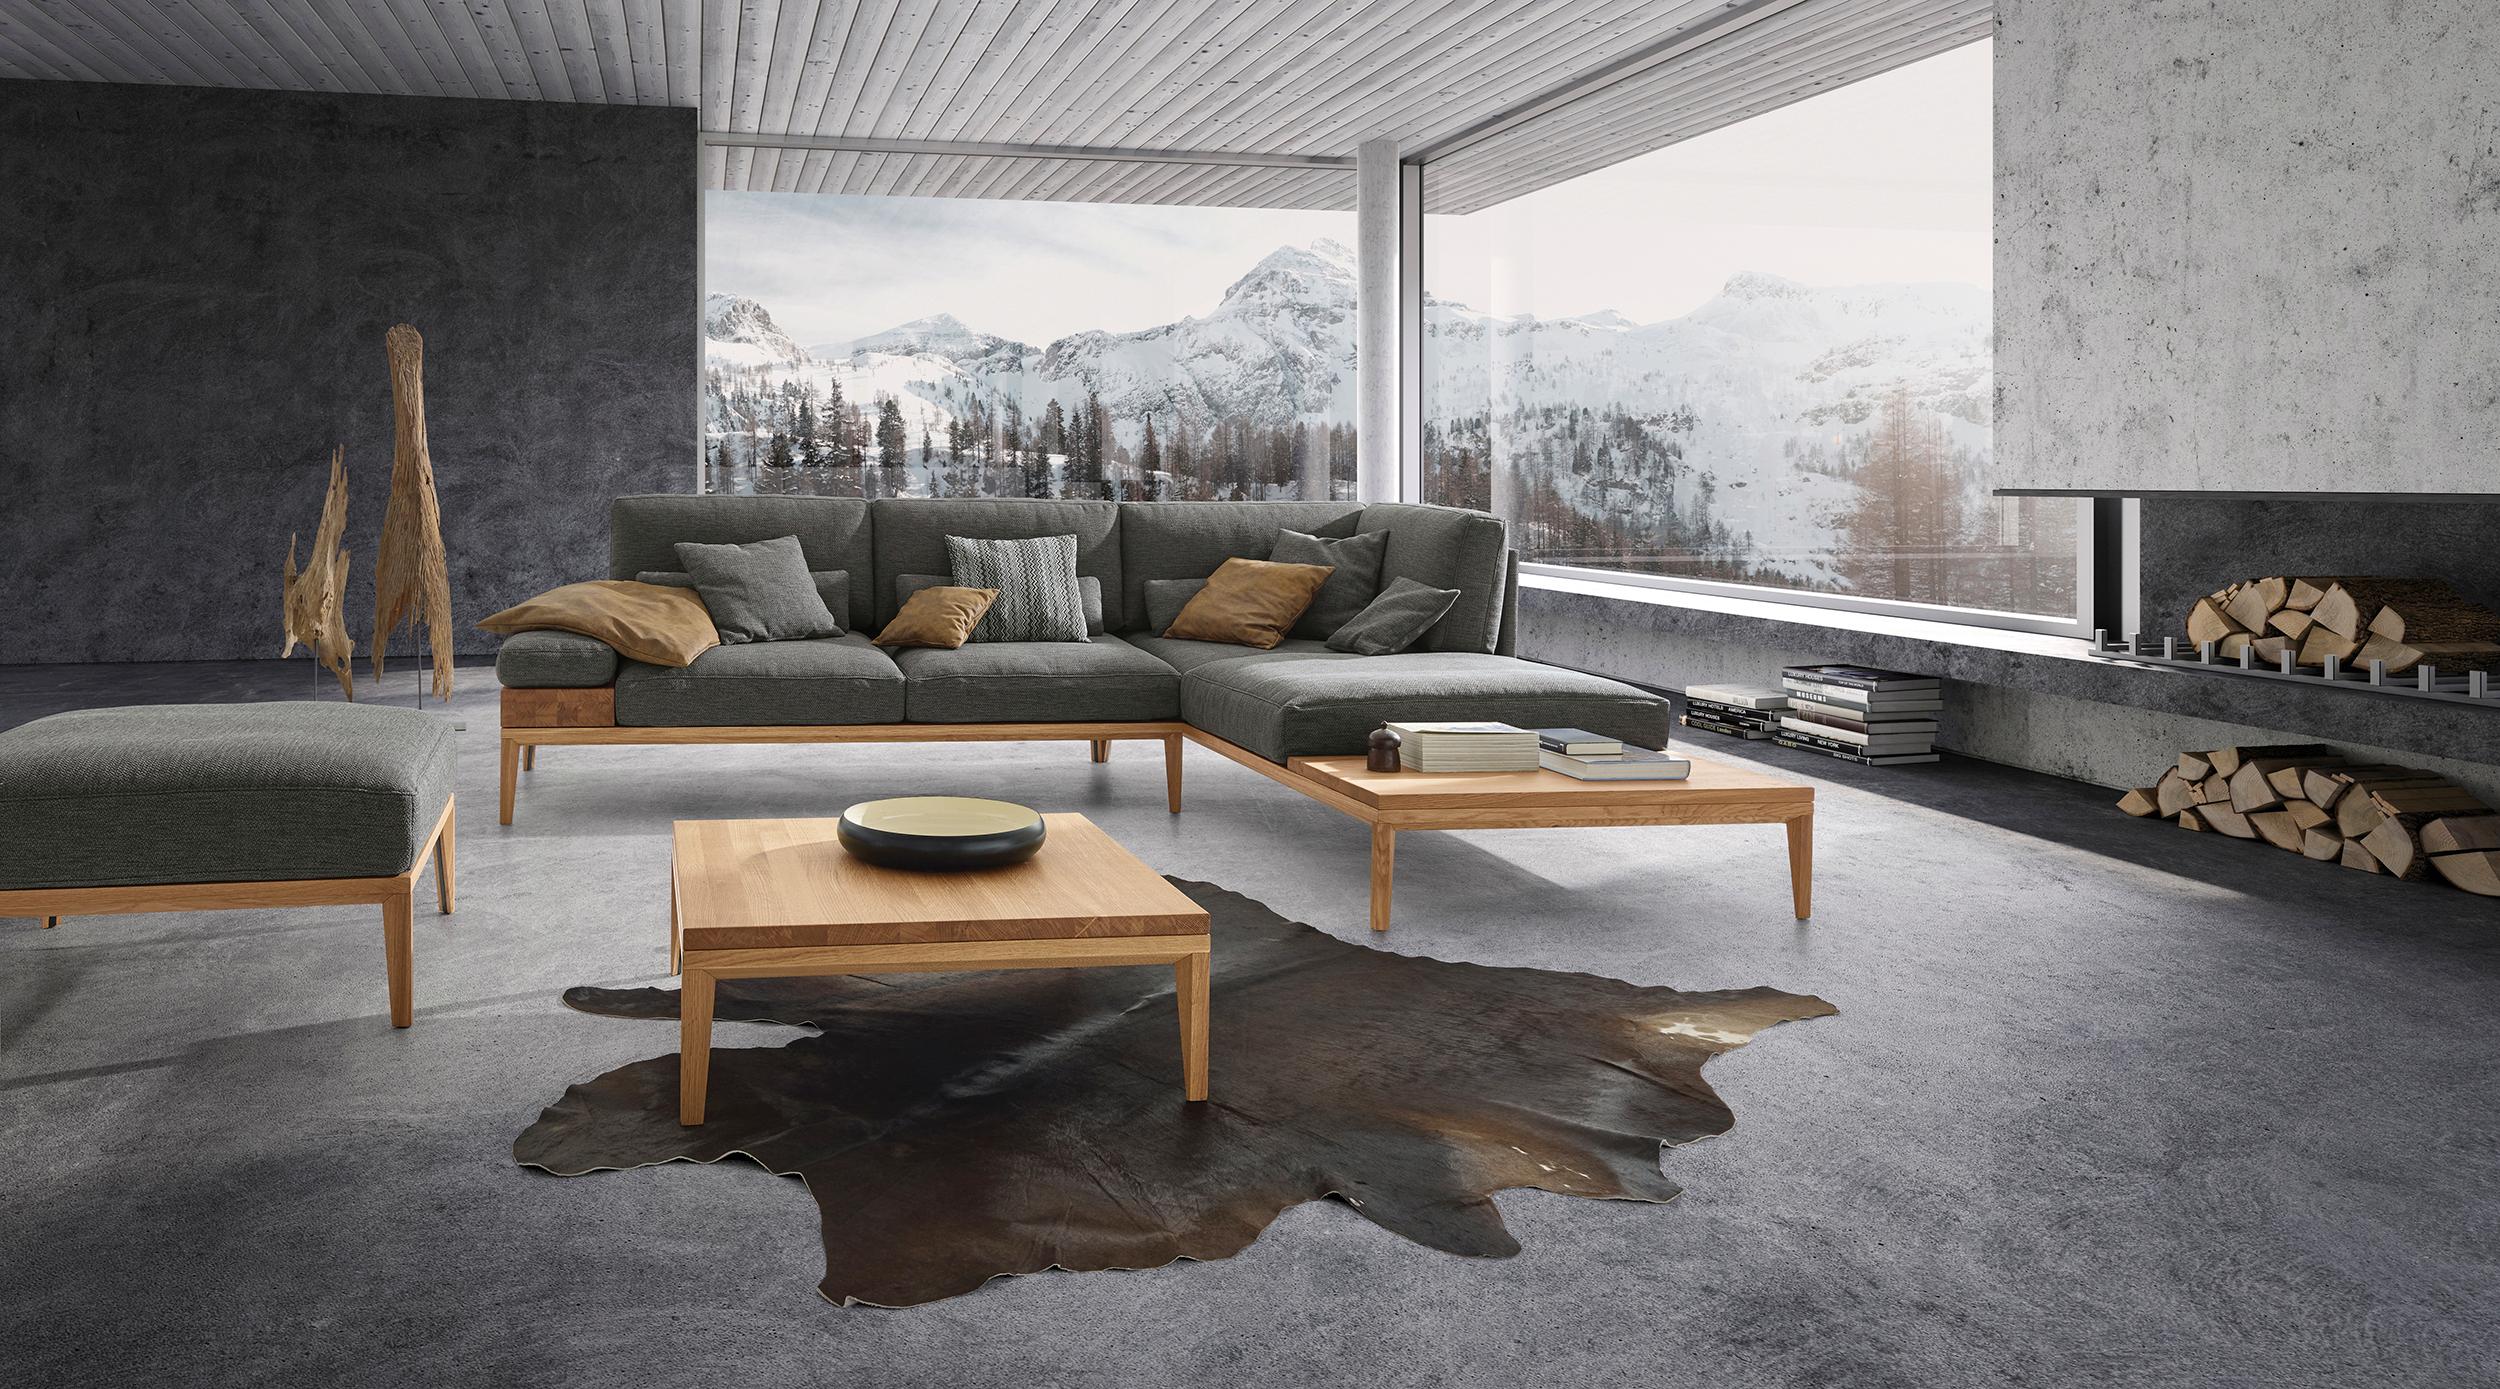 Sofa "Tavola" in Grau mit Holzelementen von ADA #beistelltisch #sofa #grauessofa #holzsofa #wohnzimmergestaltung #panoramafenster ©ADA